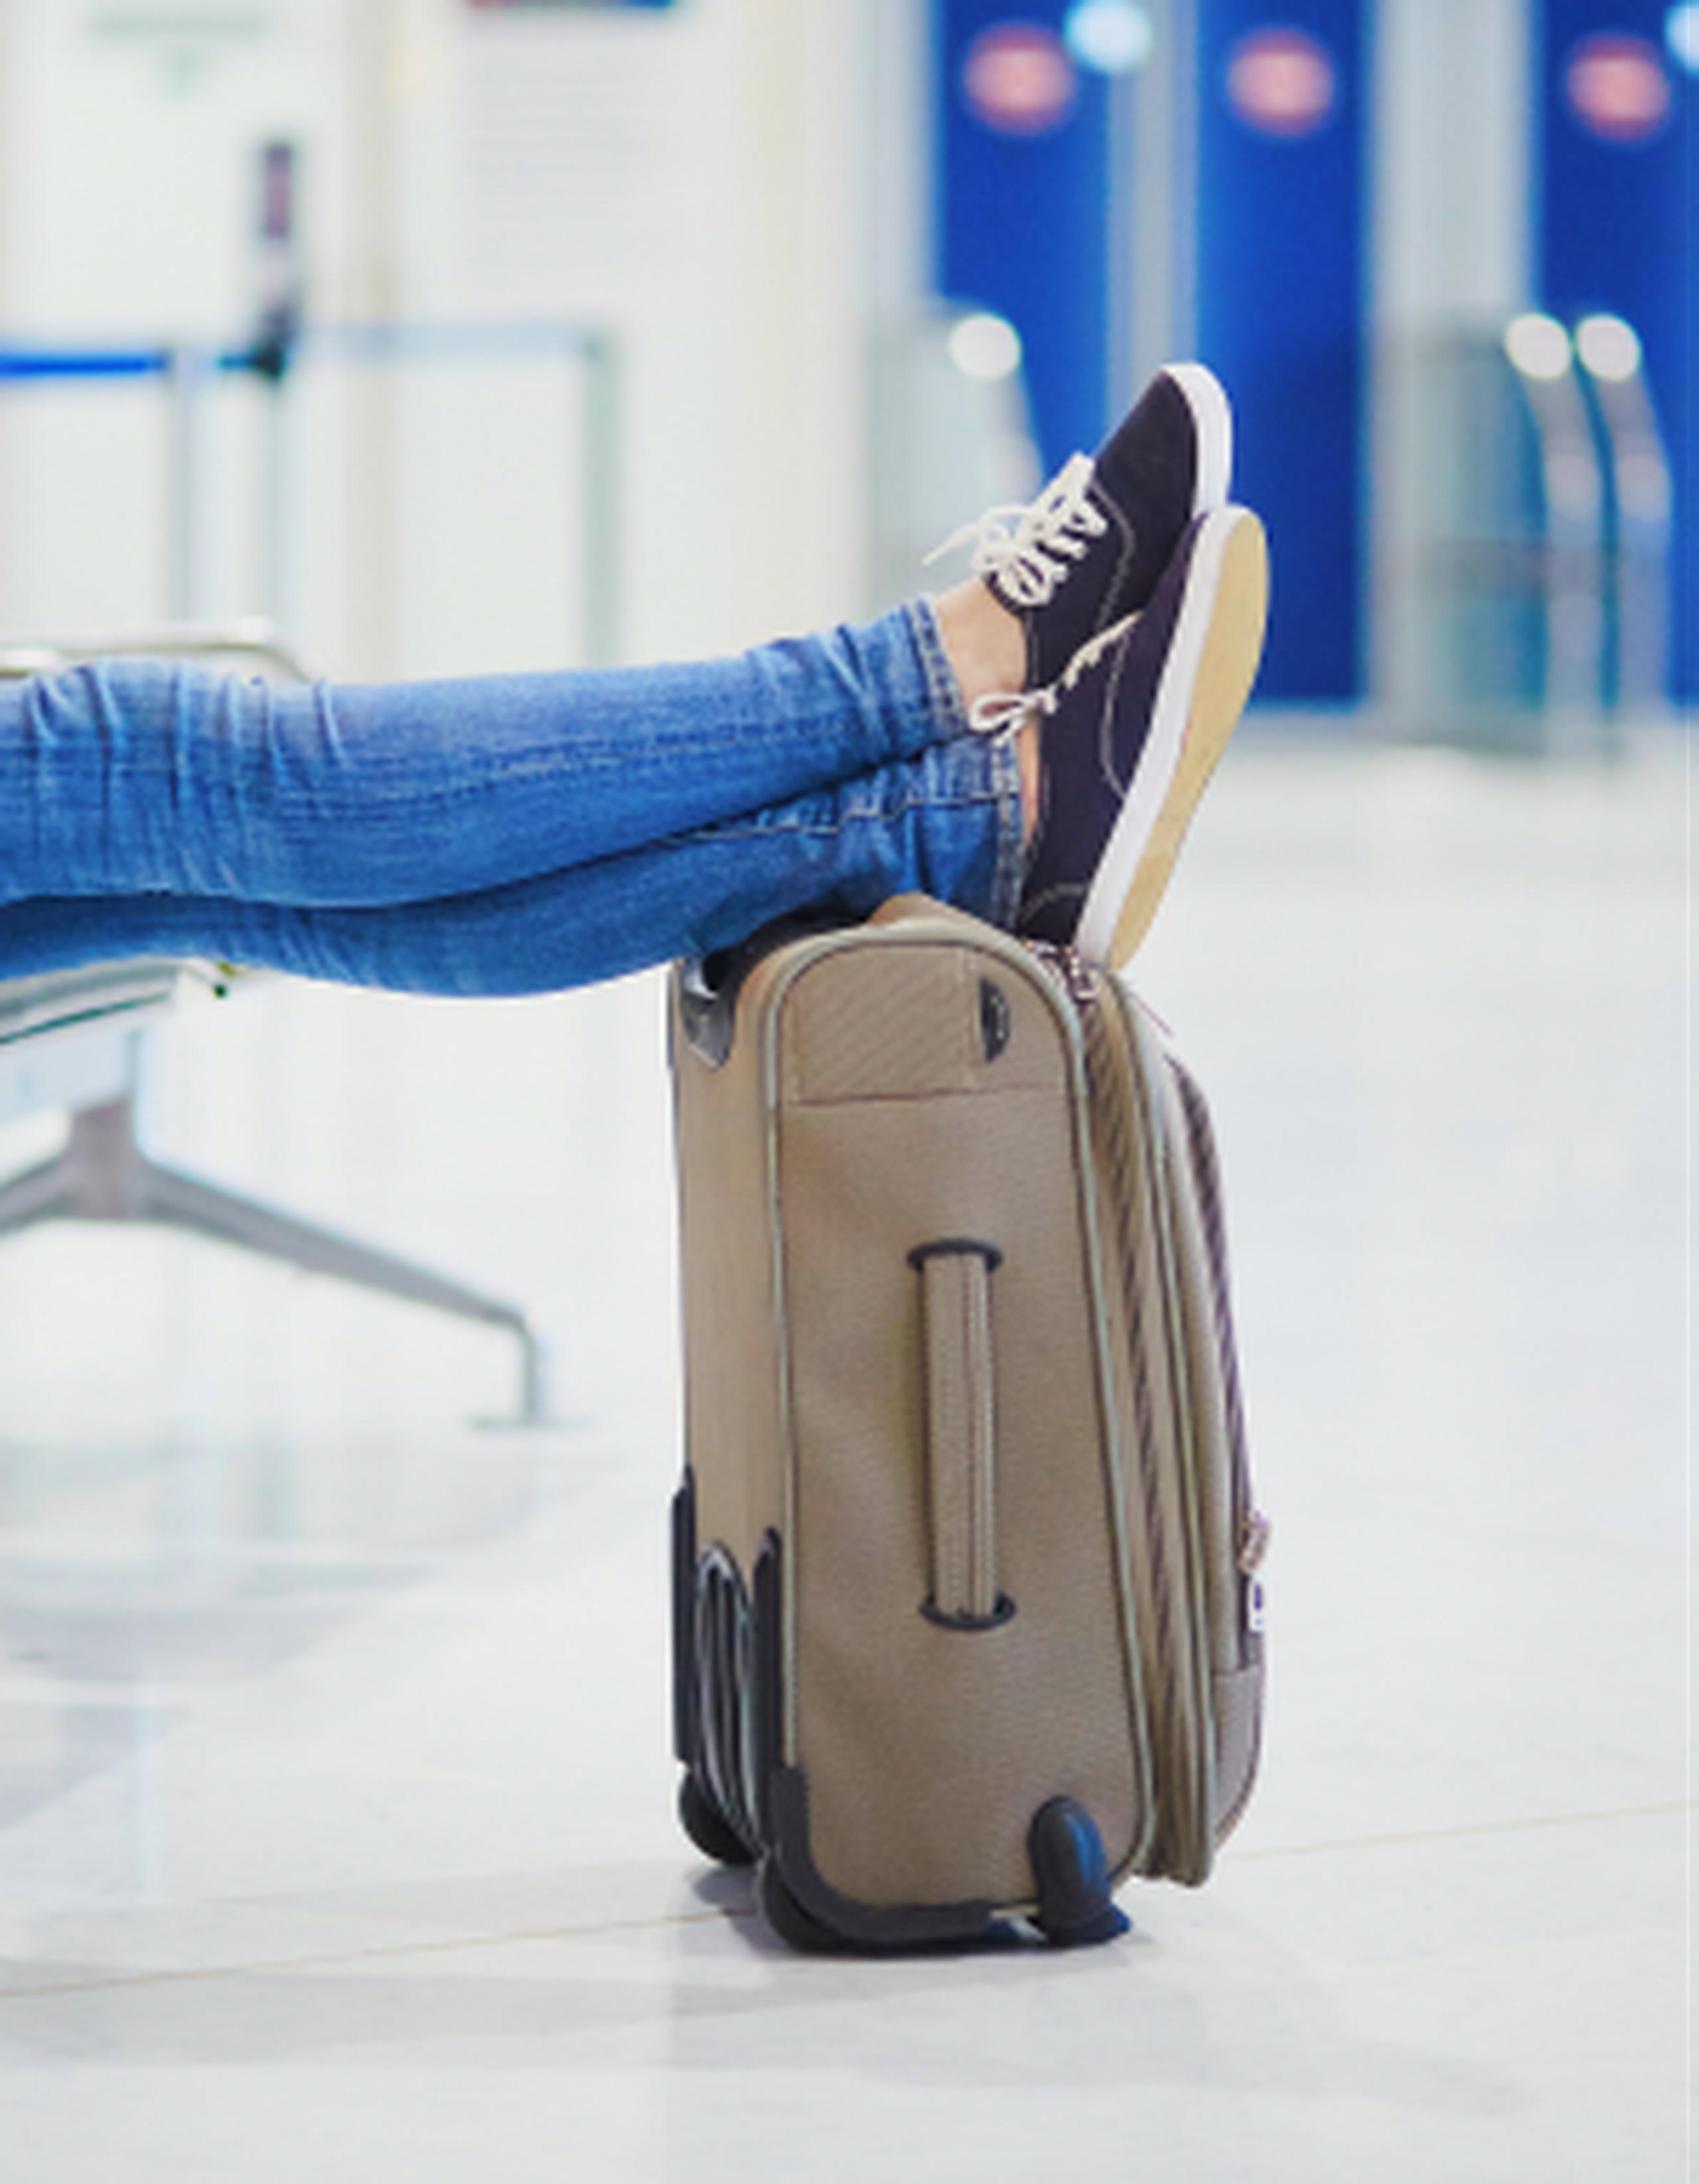 El equipaje de mano te puede salvar de algunos problemas durante tu viaje. (Shutterstock)